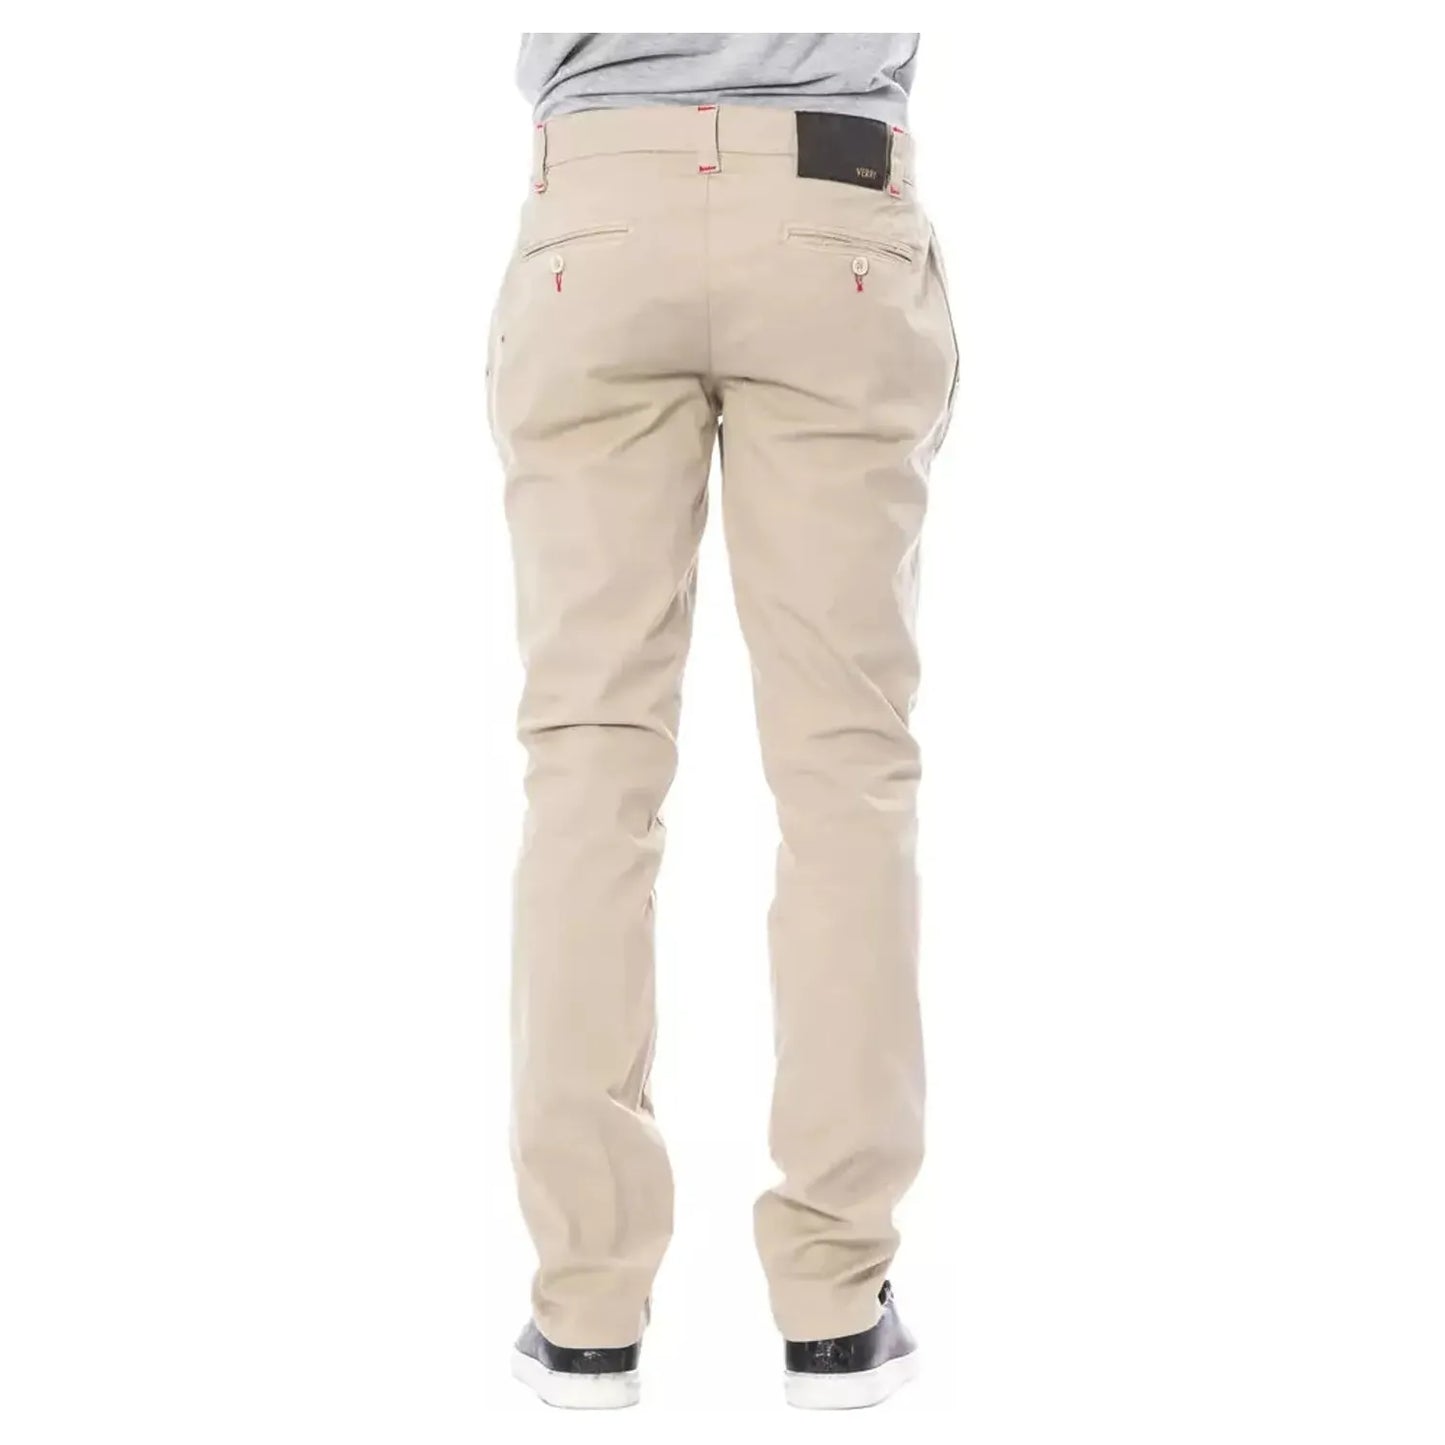 Verri Beige Slim Fit Chino Pants beige-cotton-jeans-pant-14